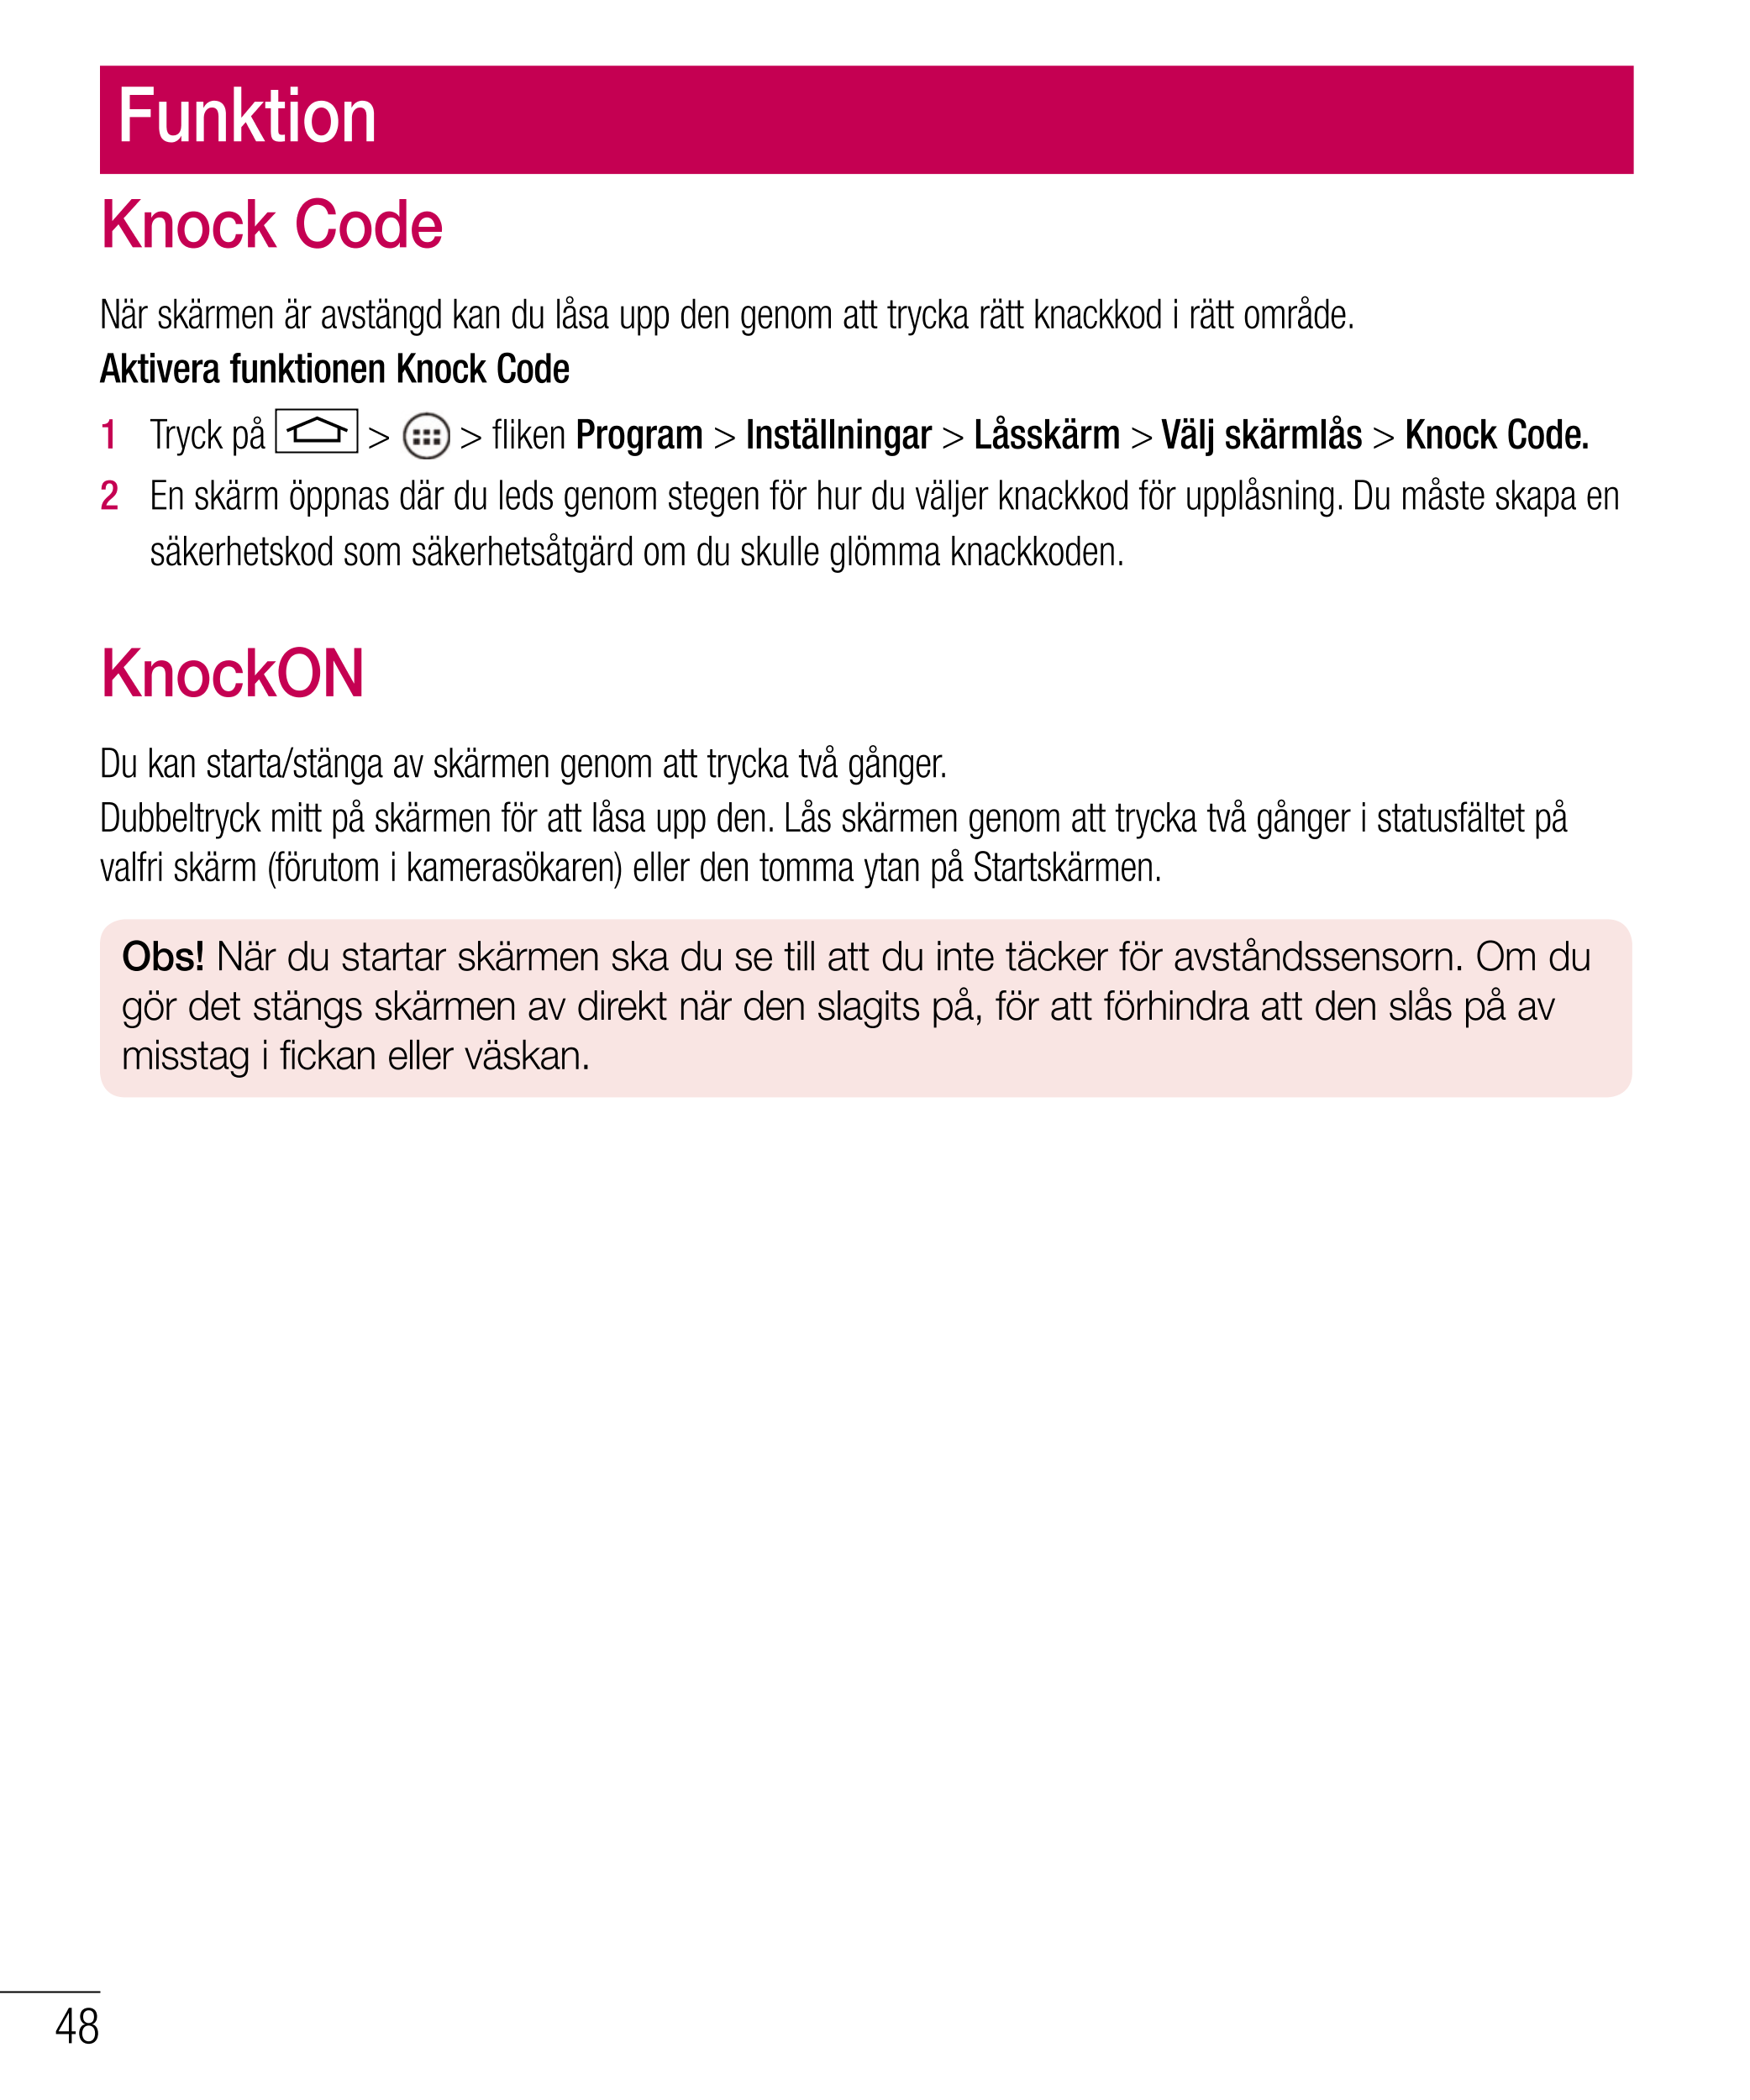 Funktion
Knock Code
När skärmen är avstängd kan du låsa upp den genom att trycka rätt knackkod i rätt område.
Aktivera funktione